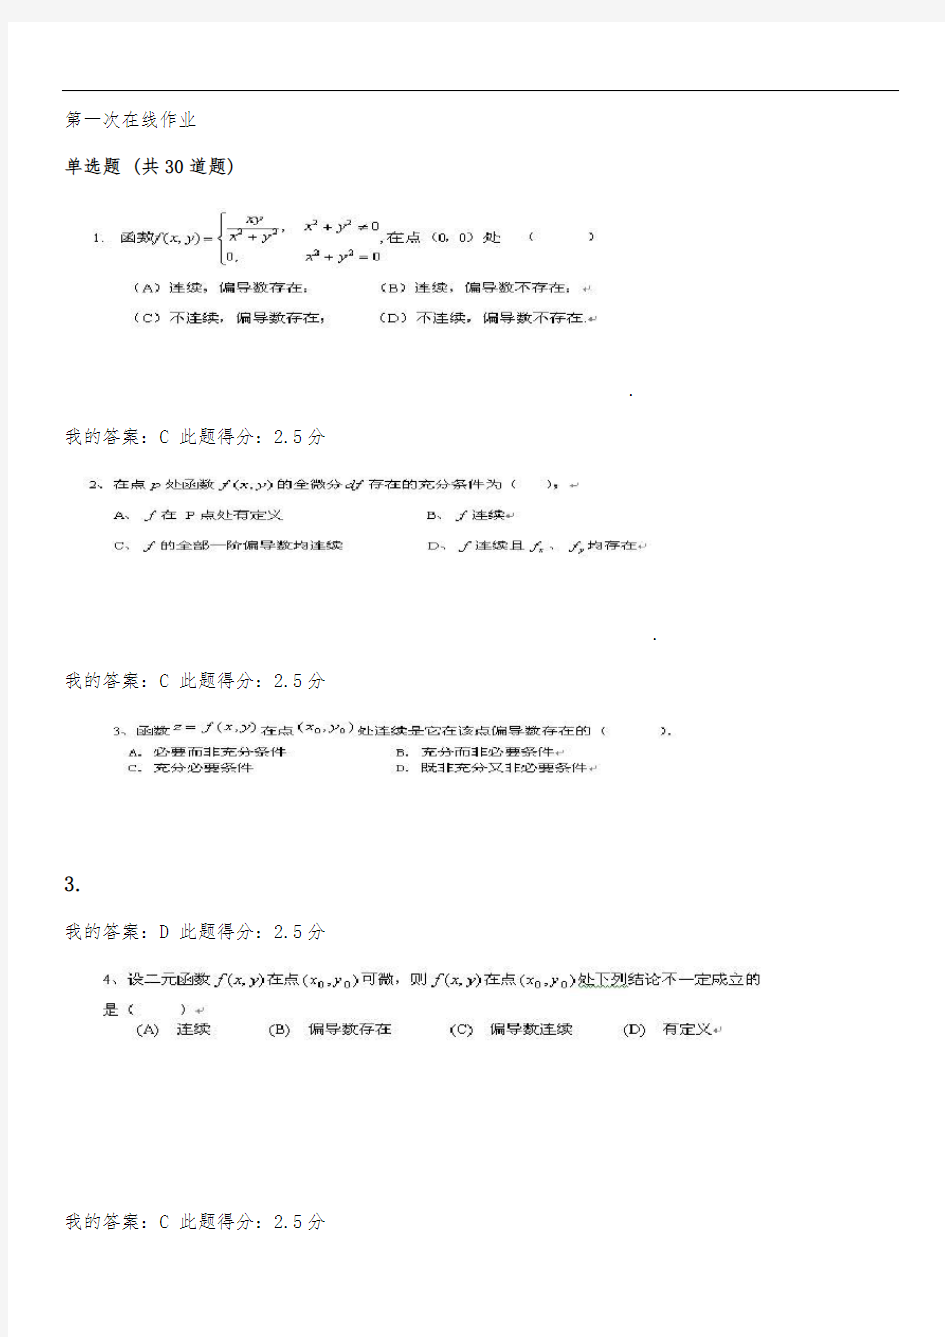 中国石油大学(北京)高等数学(二)第一、二、三次在线作业